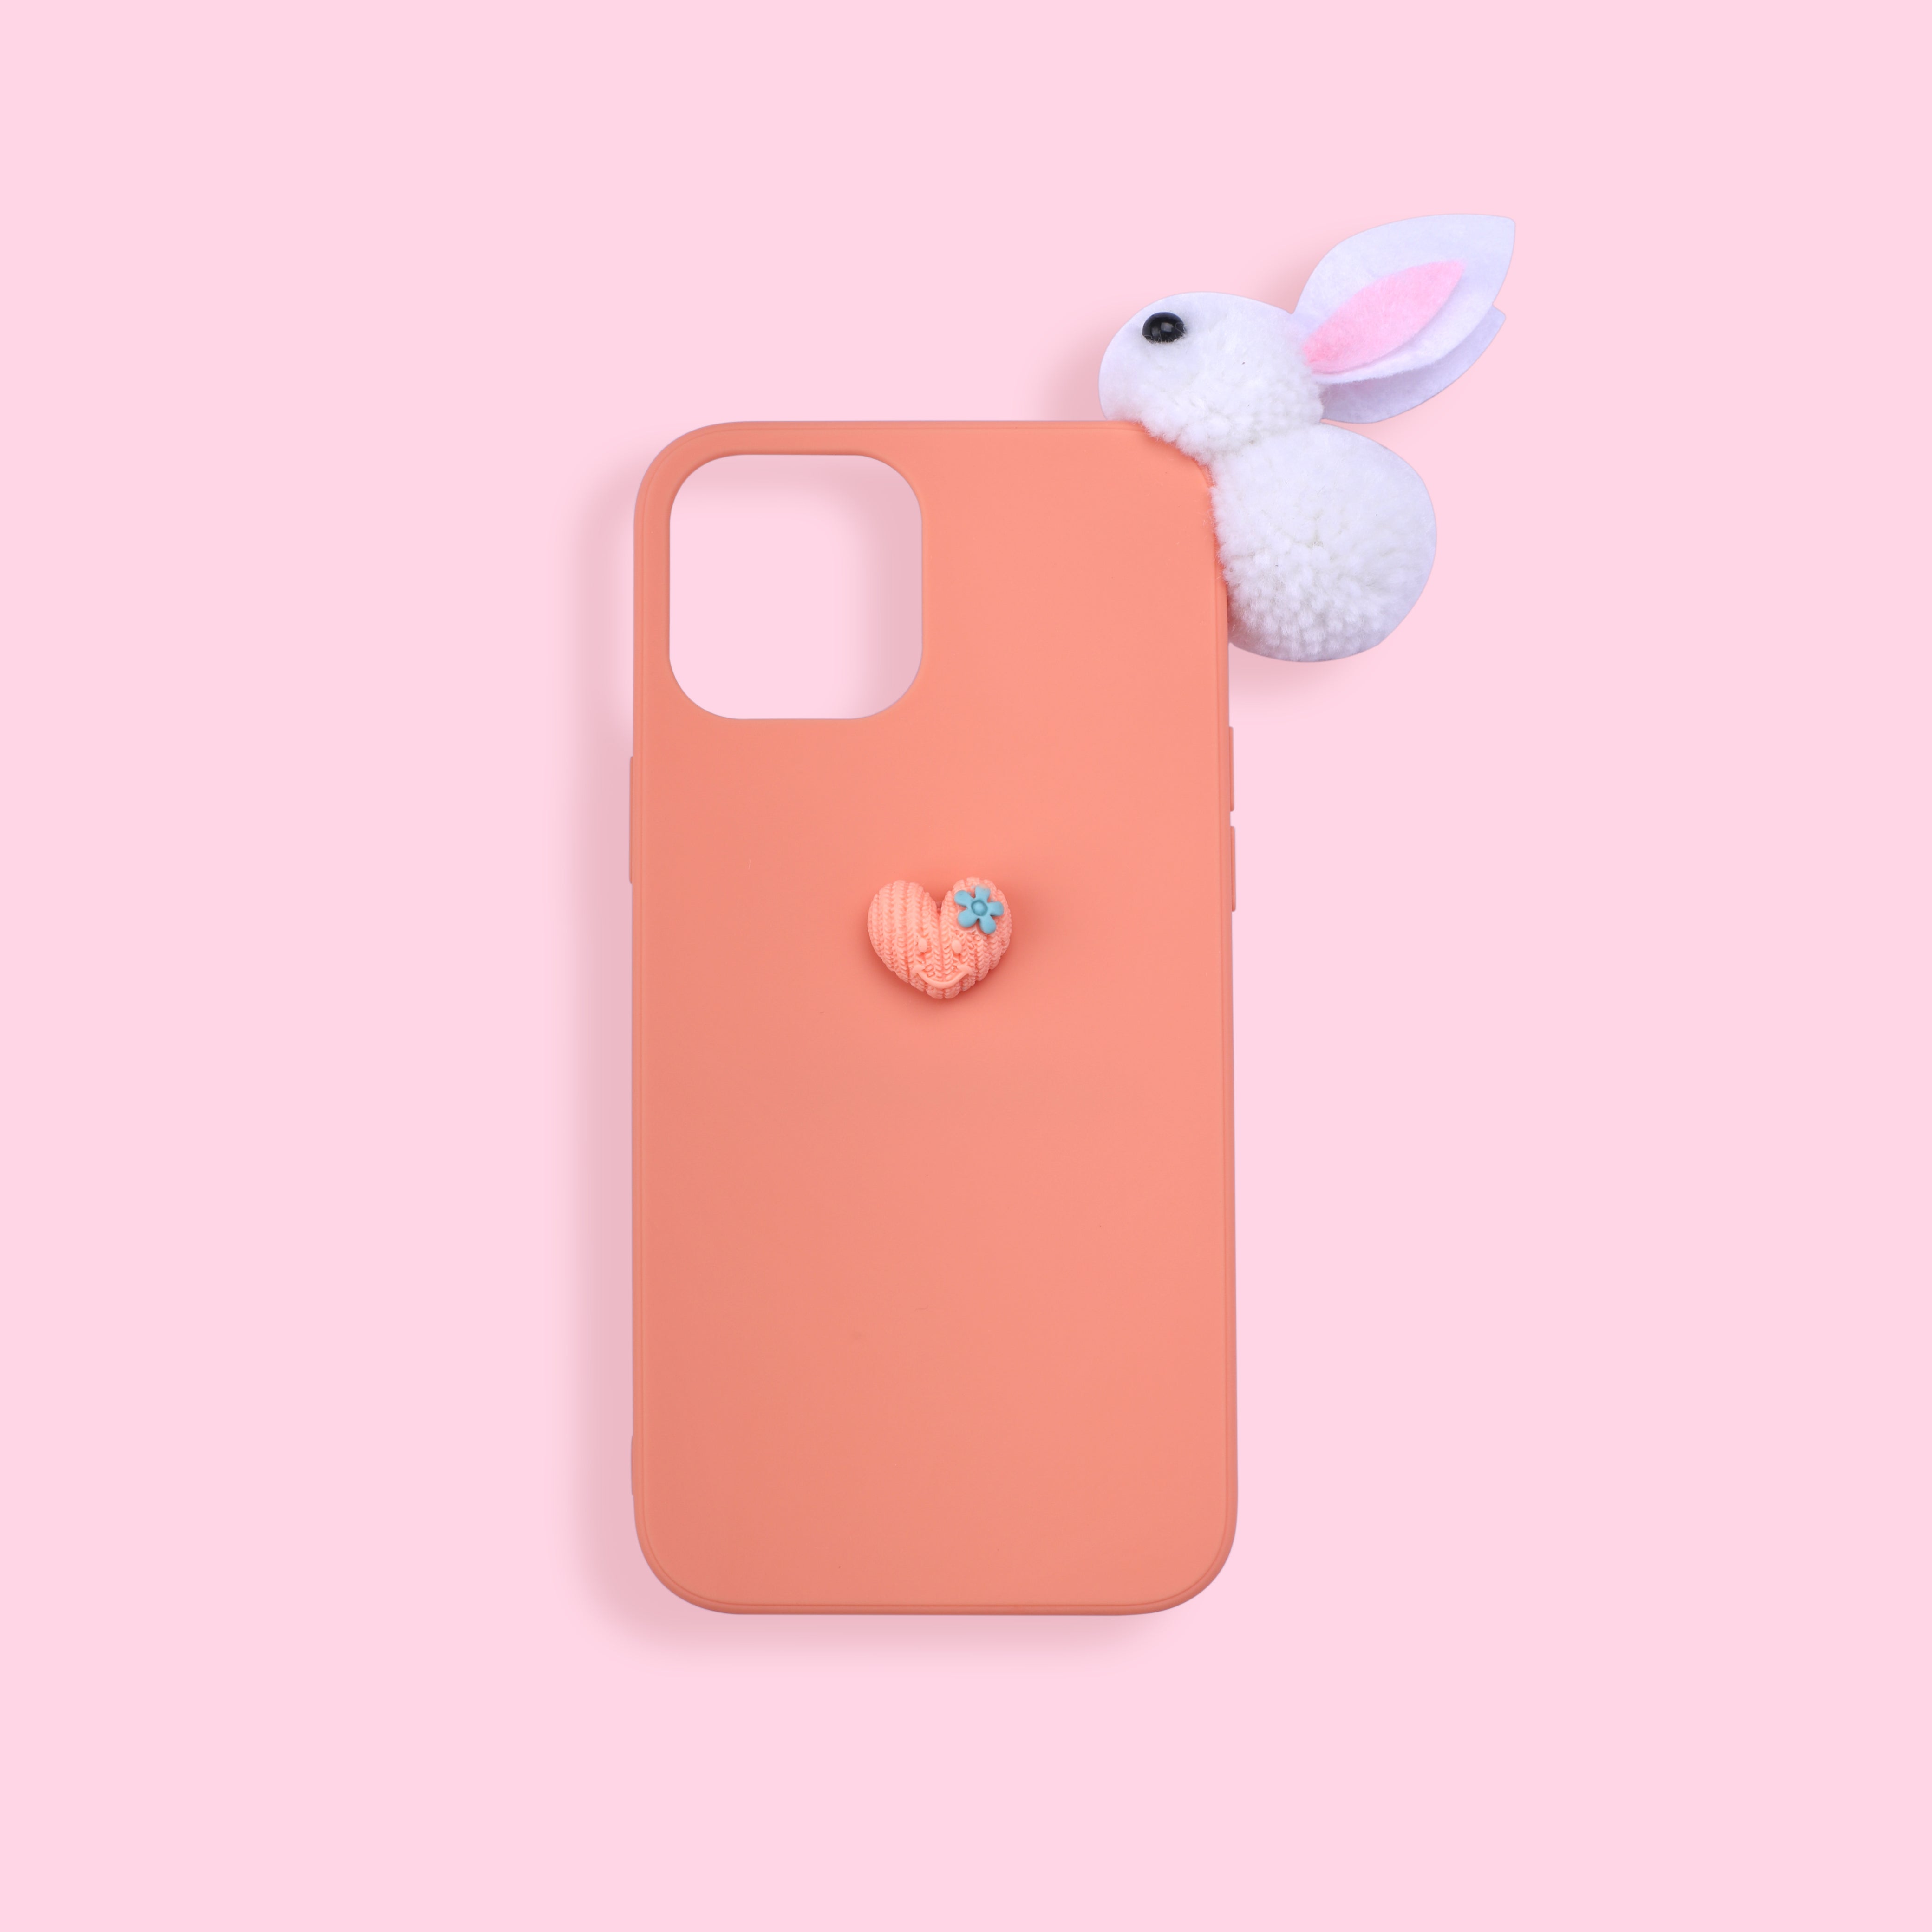 iPhone 11 Pro Max Case - Rabbit - Orange